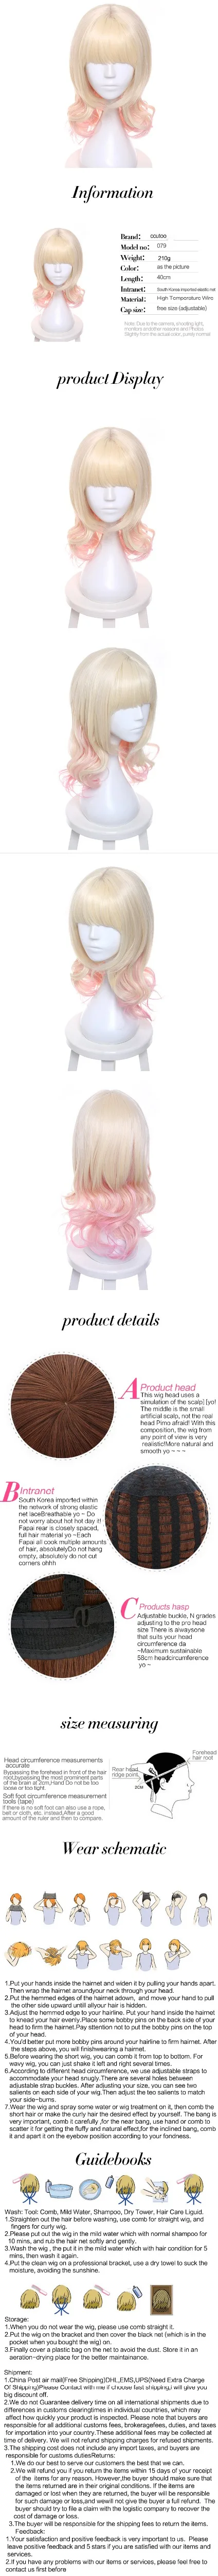 Ccutoo Diabolik ЛЮБИТЕЛЕЙ komori Юи 40 см розовый блондинка Ombre Mix Вьющиеся Средний Плоский Синтетические чёлки волос стиле Синтетические волосы